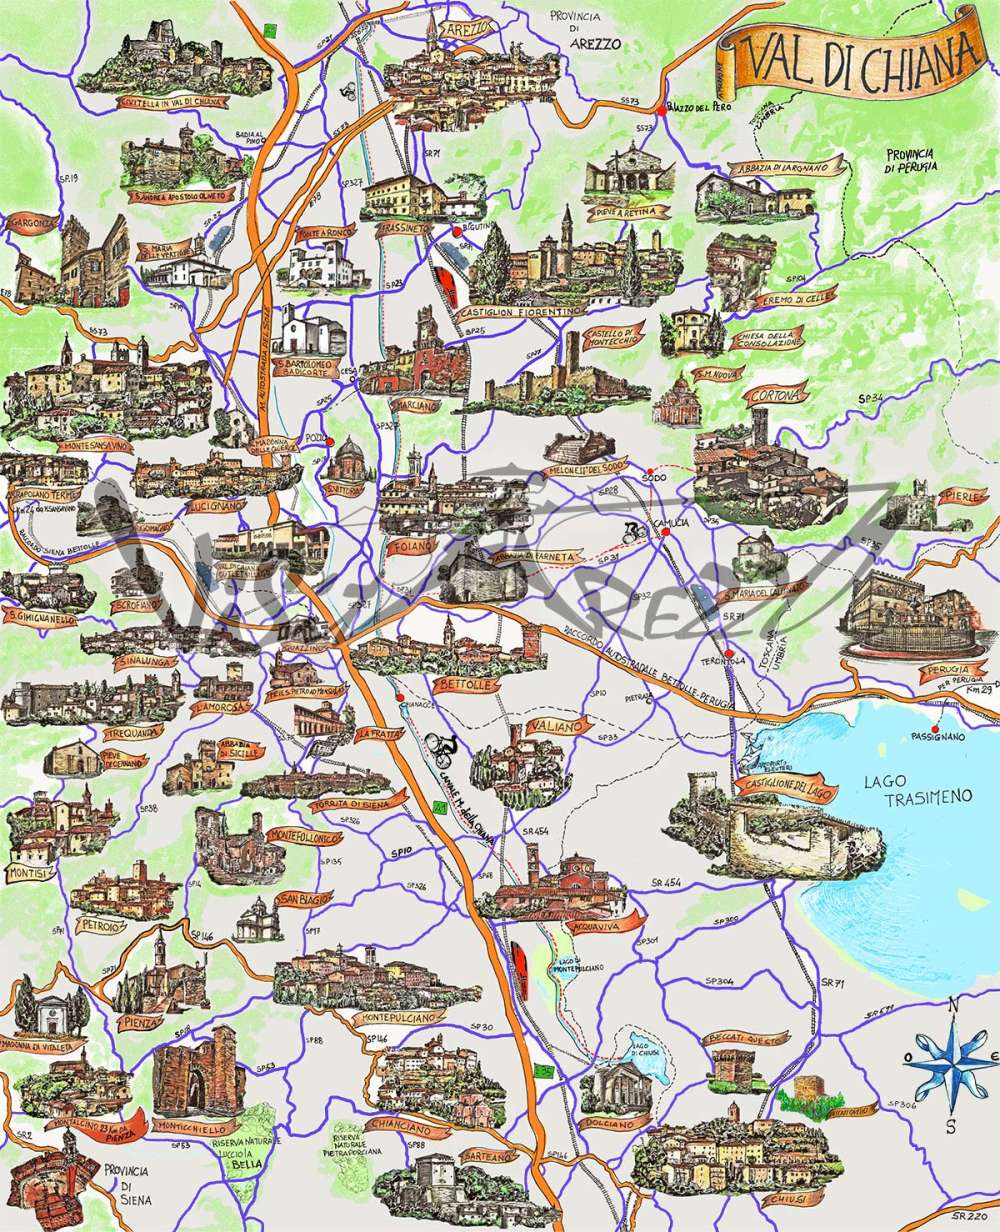 Cartina e mappa turistica della Valdichiana: itinerario per visitare